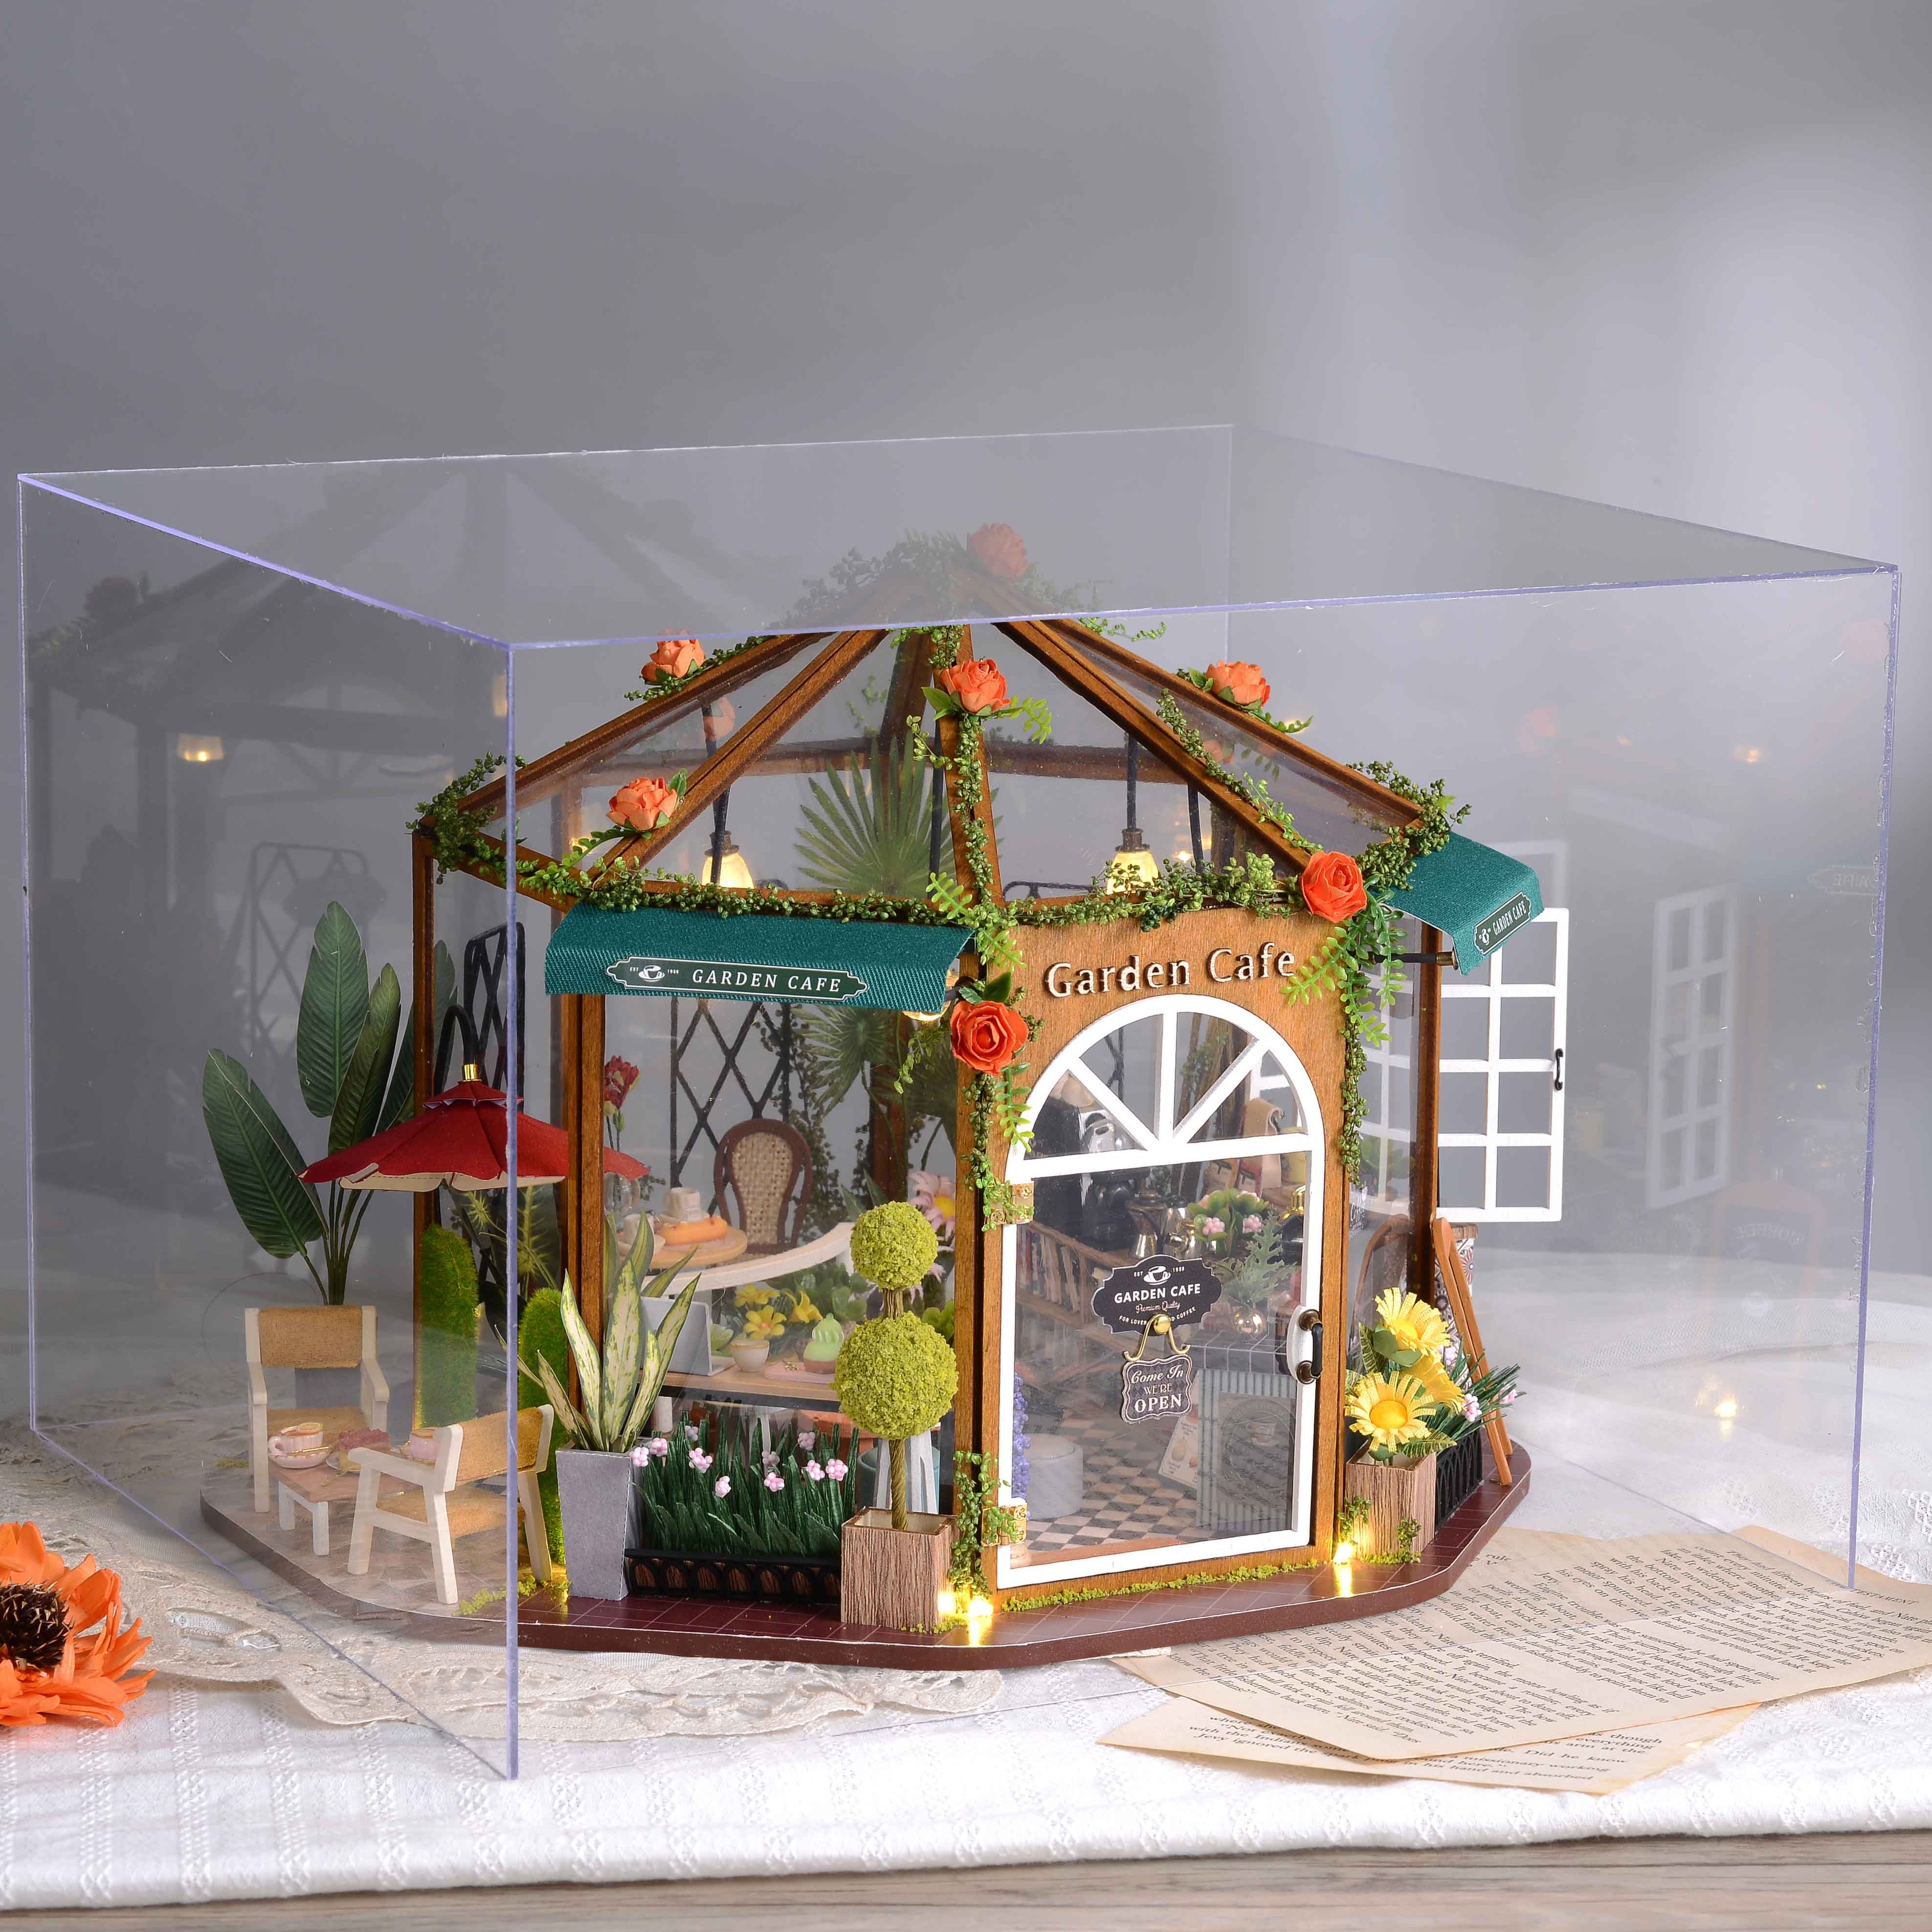 casa em miniatura DIY Doll House - Teashop madeira pequena com móveis em  miniatura, escala 1:24 Mini artesanato feito à mão com movimento musical e  capa à prova poeira, presente para adolescentes